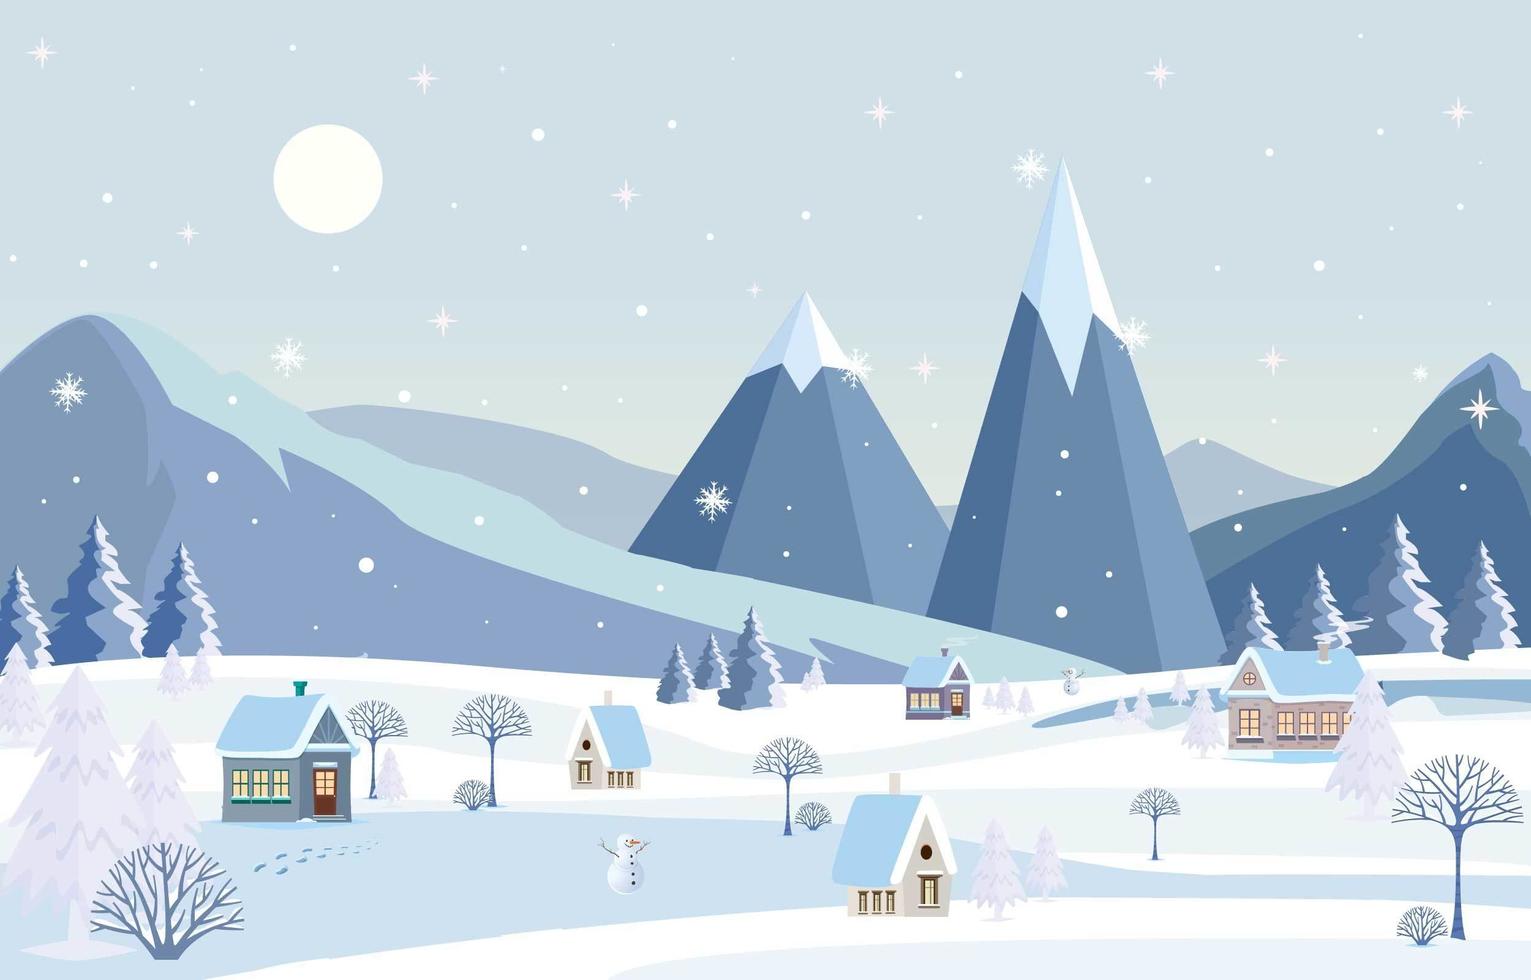 Village Scenery on Winter Season vector